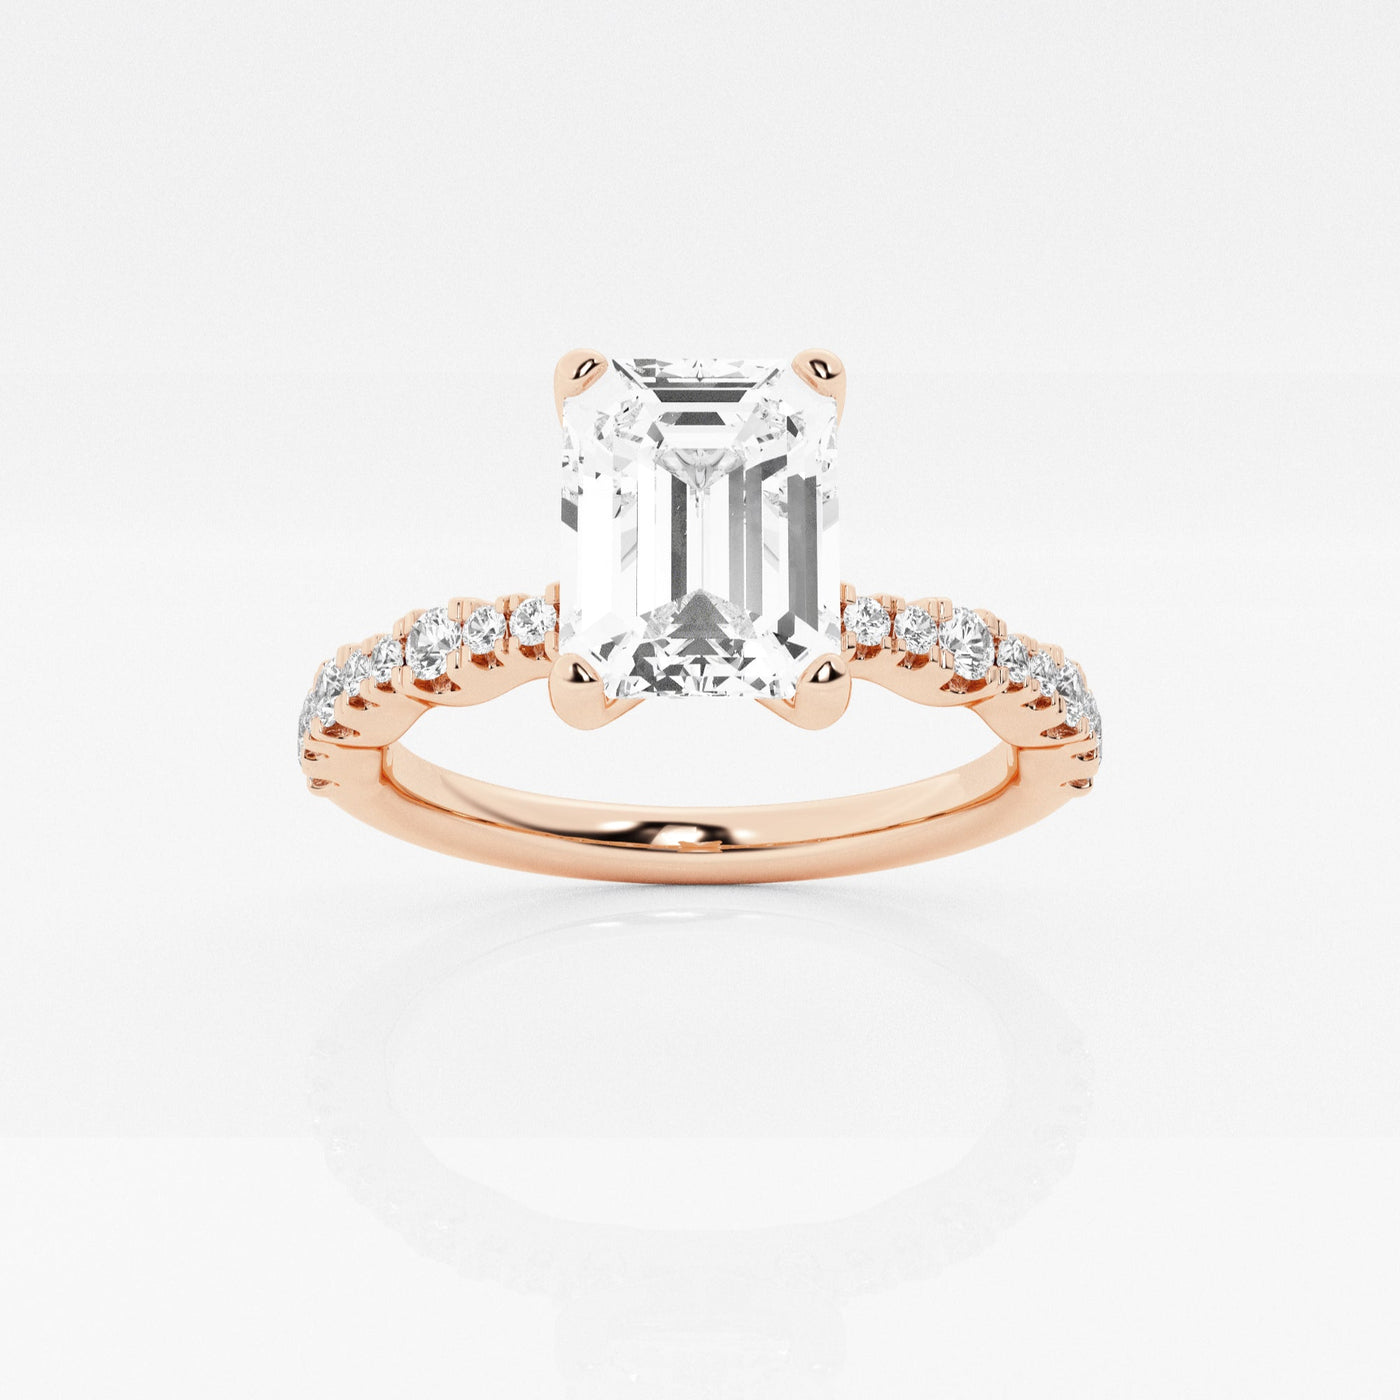 _main_image@SKU:LGR1860X2E100SOGS4~#carat_1.30#diamond-quality_fg,-vs2+#metal_18k-rose-gold